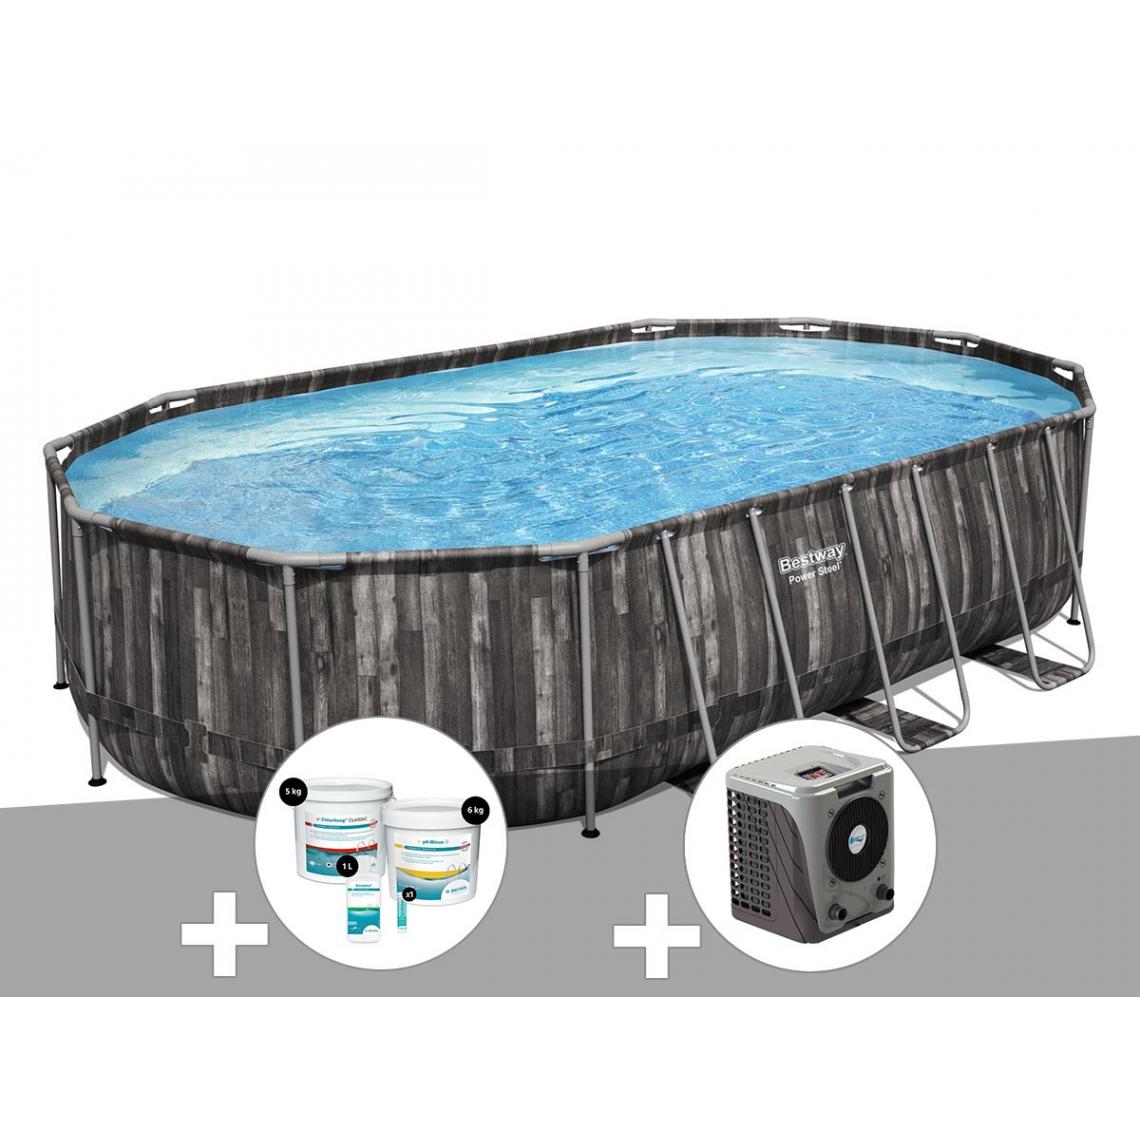 Bestway - Kit piscine tubulaire ovale Bestway Power Steel décor bois 6,10 x 3,66 x 1,22 m + Kit de traitement au chlore + Pompe à chaleur - Piscine Tubulaire